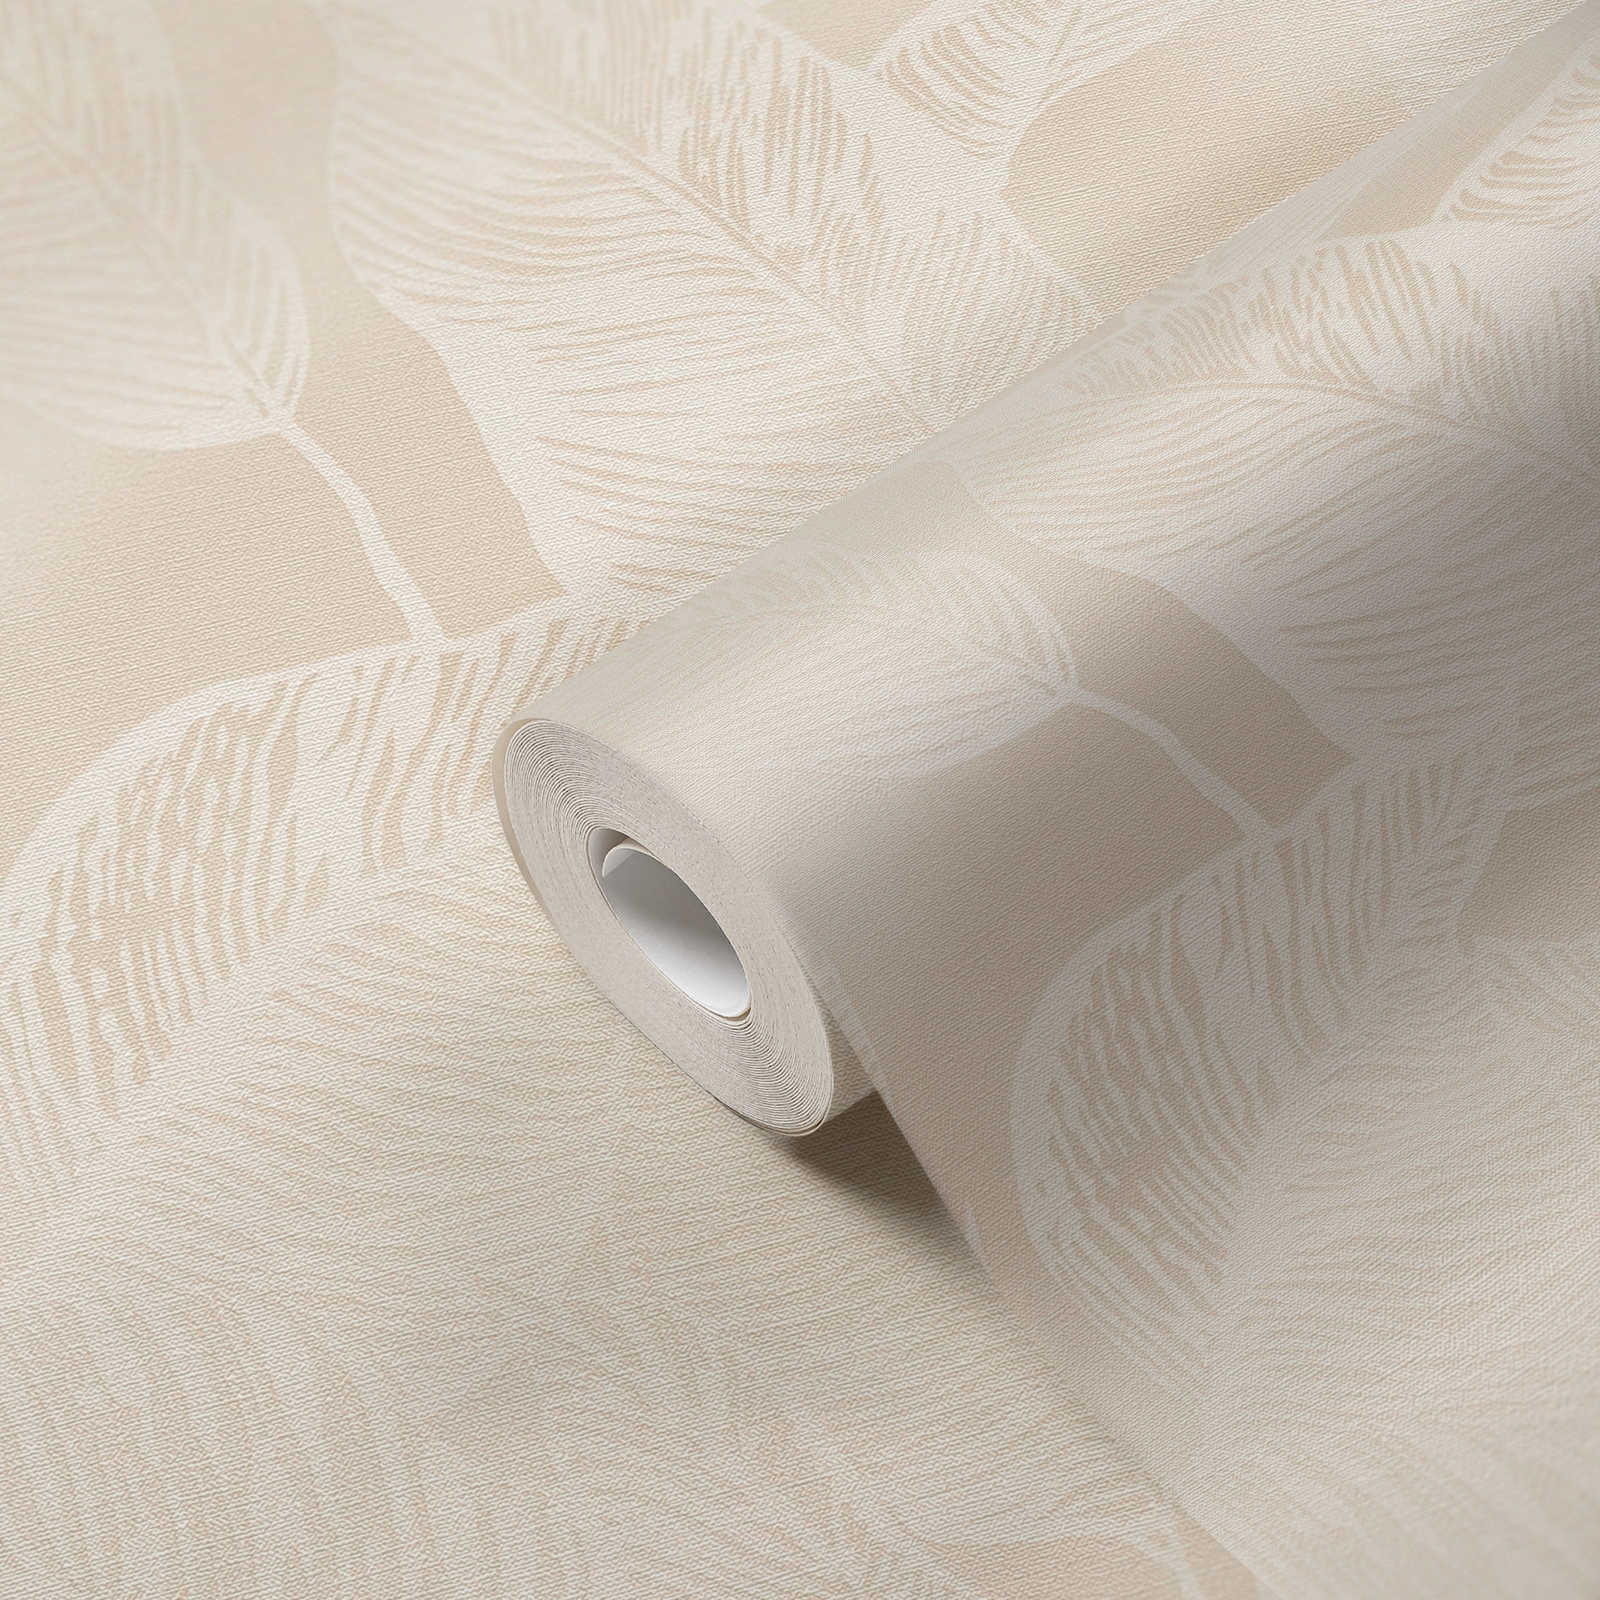             Blättermuster Vliestapete PVC-frei – Beige, Weiß
        